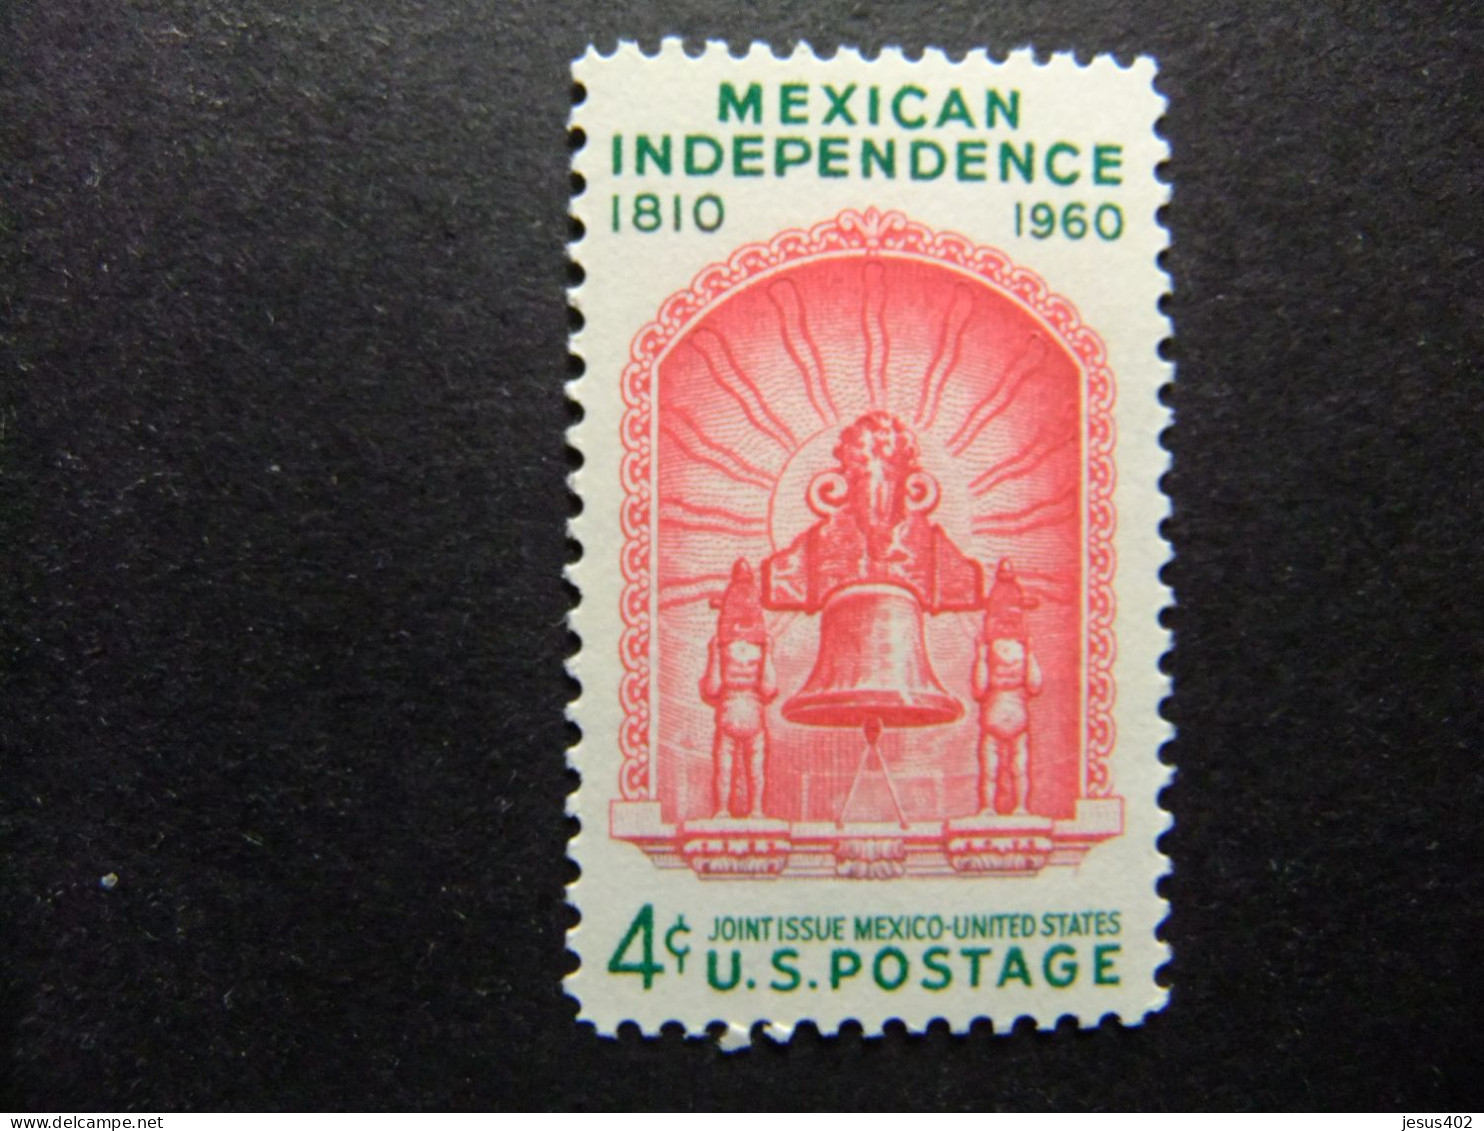 ESTADOS UNIDOS / ETATS-UNIS D'AMERIQUE 1960 / 150 ANIV. DE INDEPENDENCIA MEXICANA YVERT 692 ** MNH - Ongebruikt